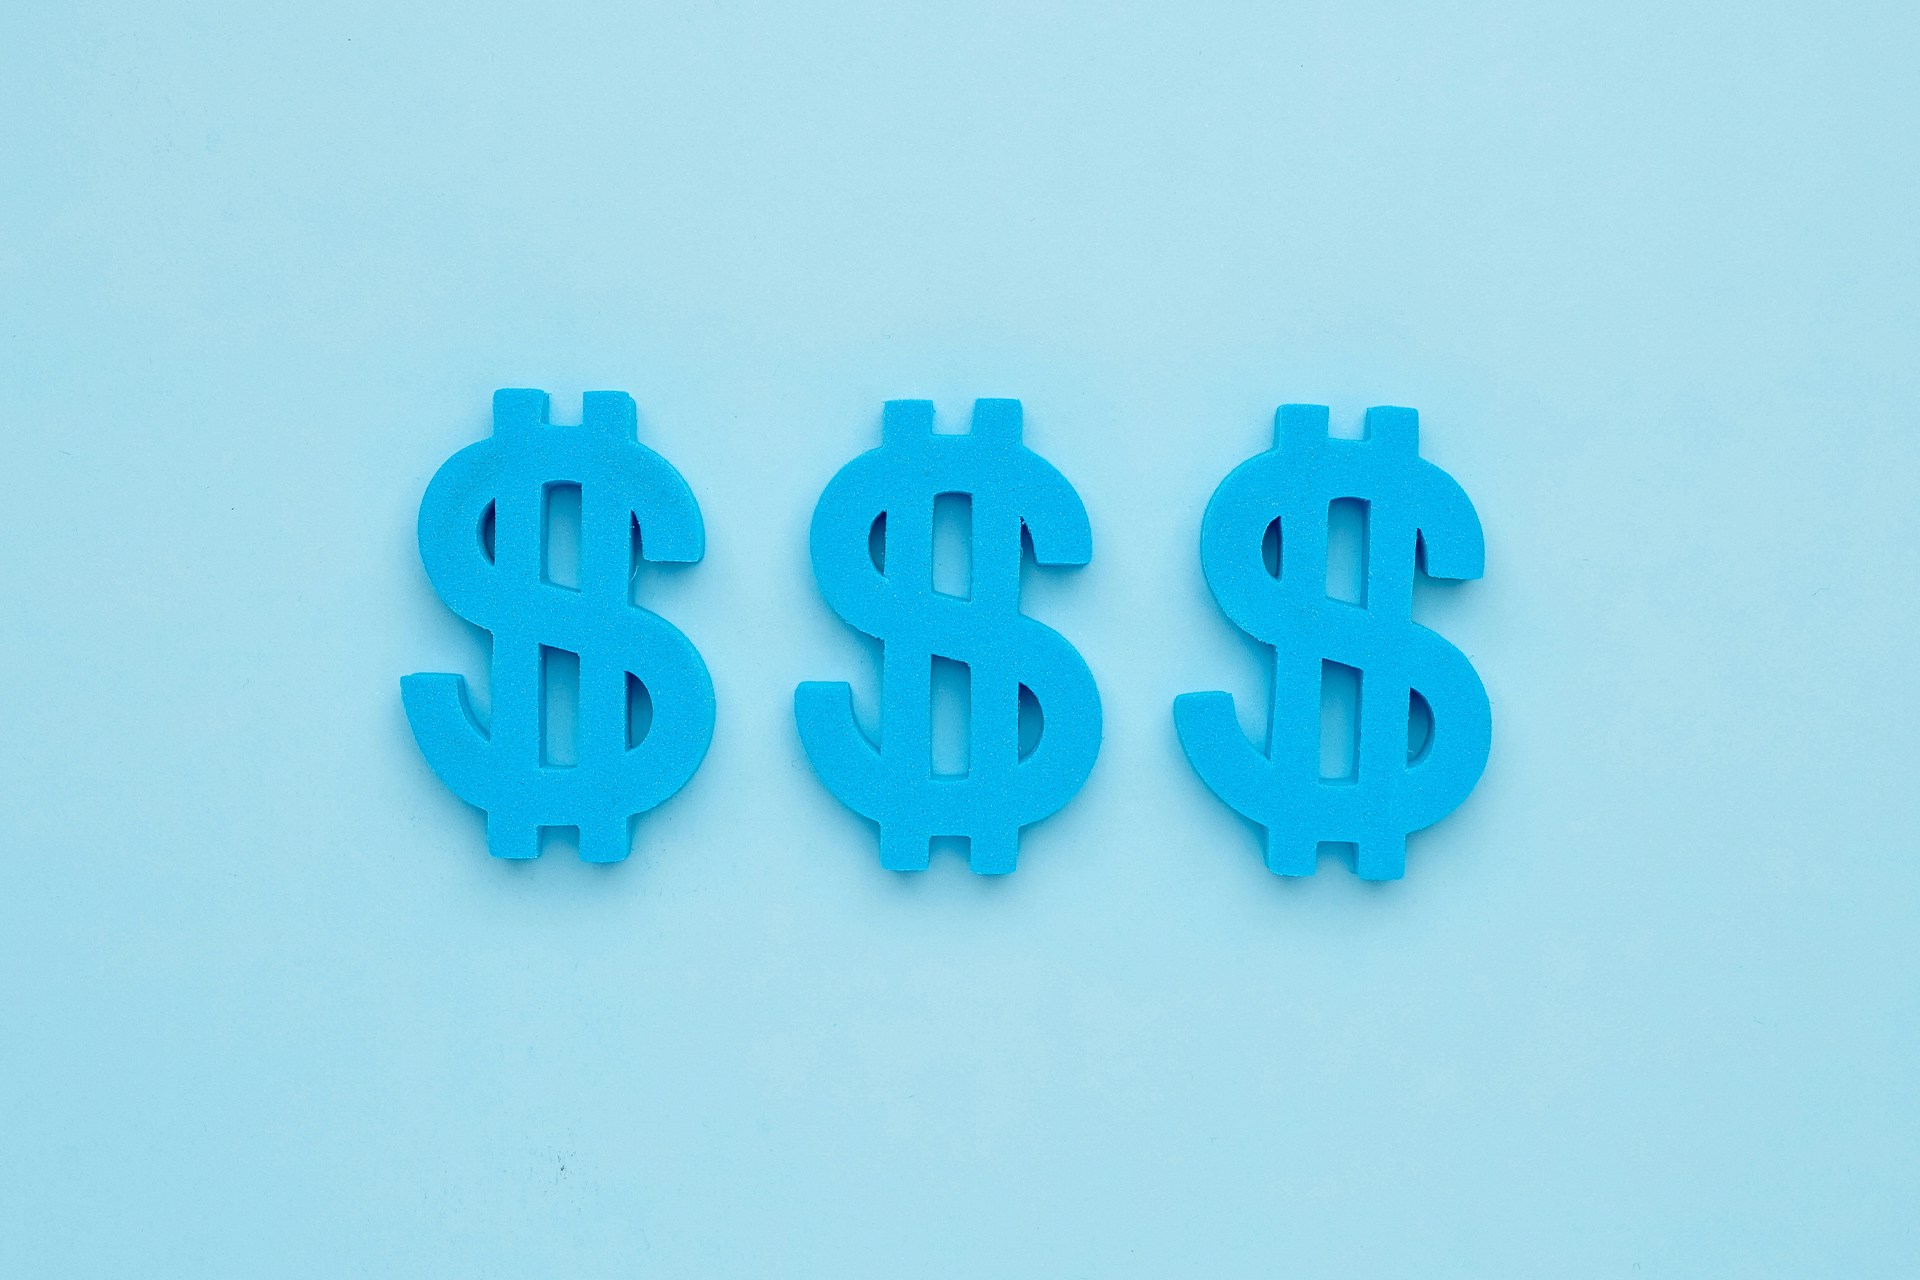 Trois signes de dollar américain bleu sur fond bleu. Les signes dollar représentent les revenus que votre équipe marketing pourrait générer via les publicités Facebook.